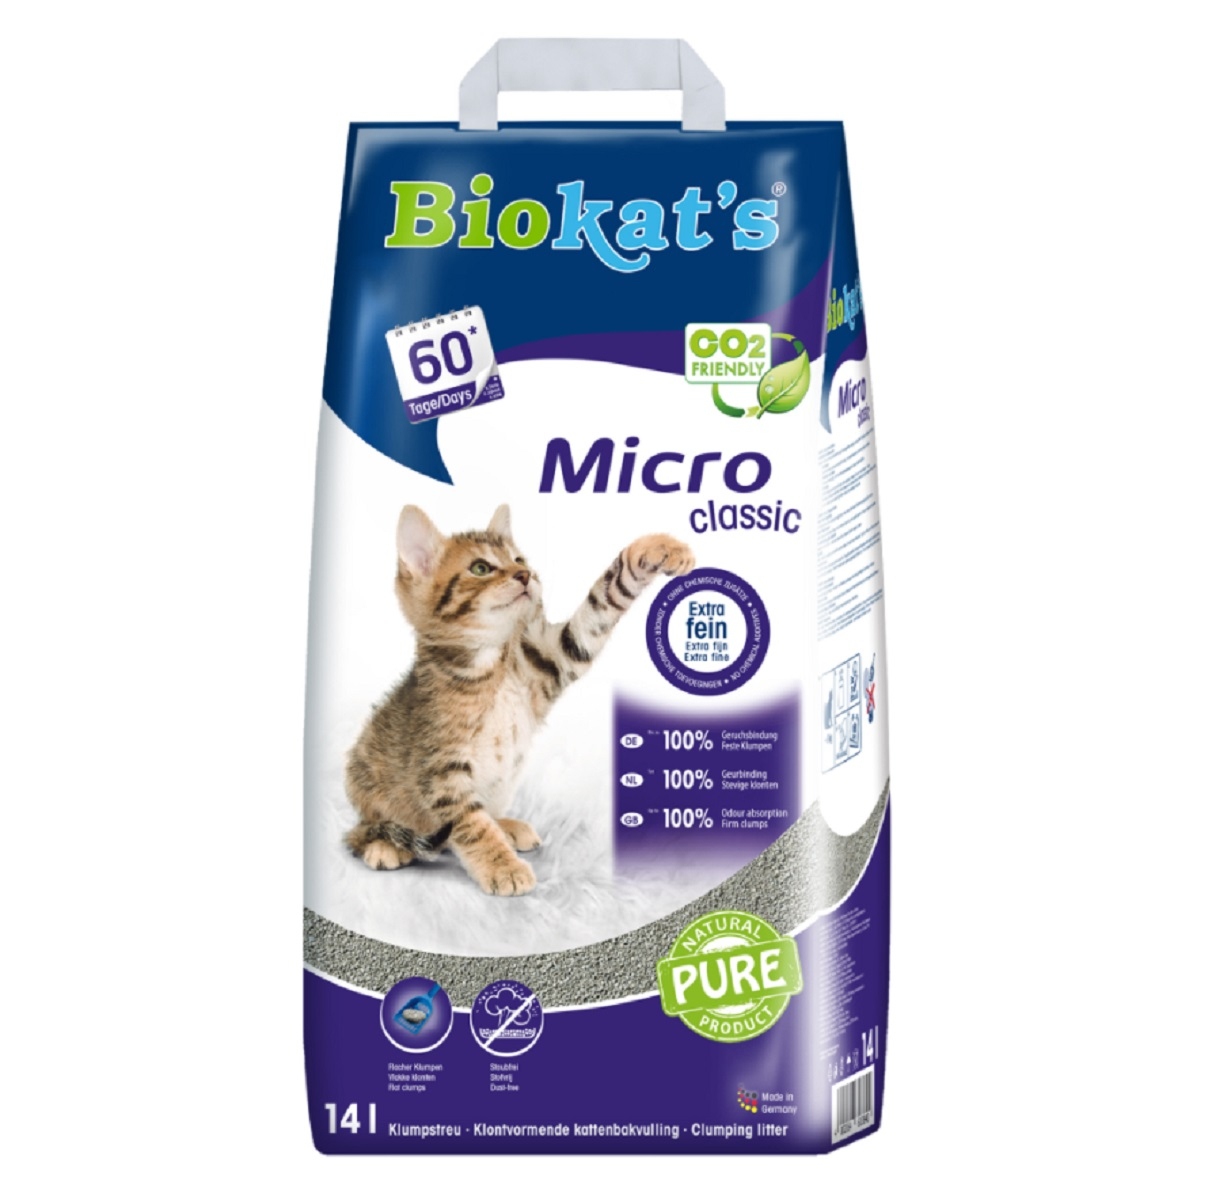 Biokat's Micro Classic Lettiera per gatto